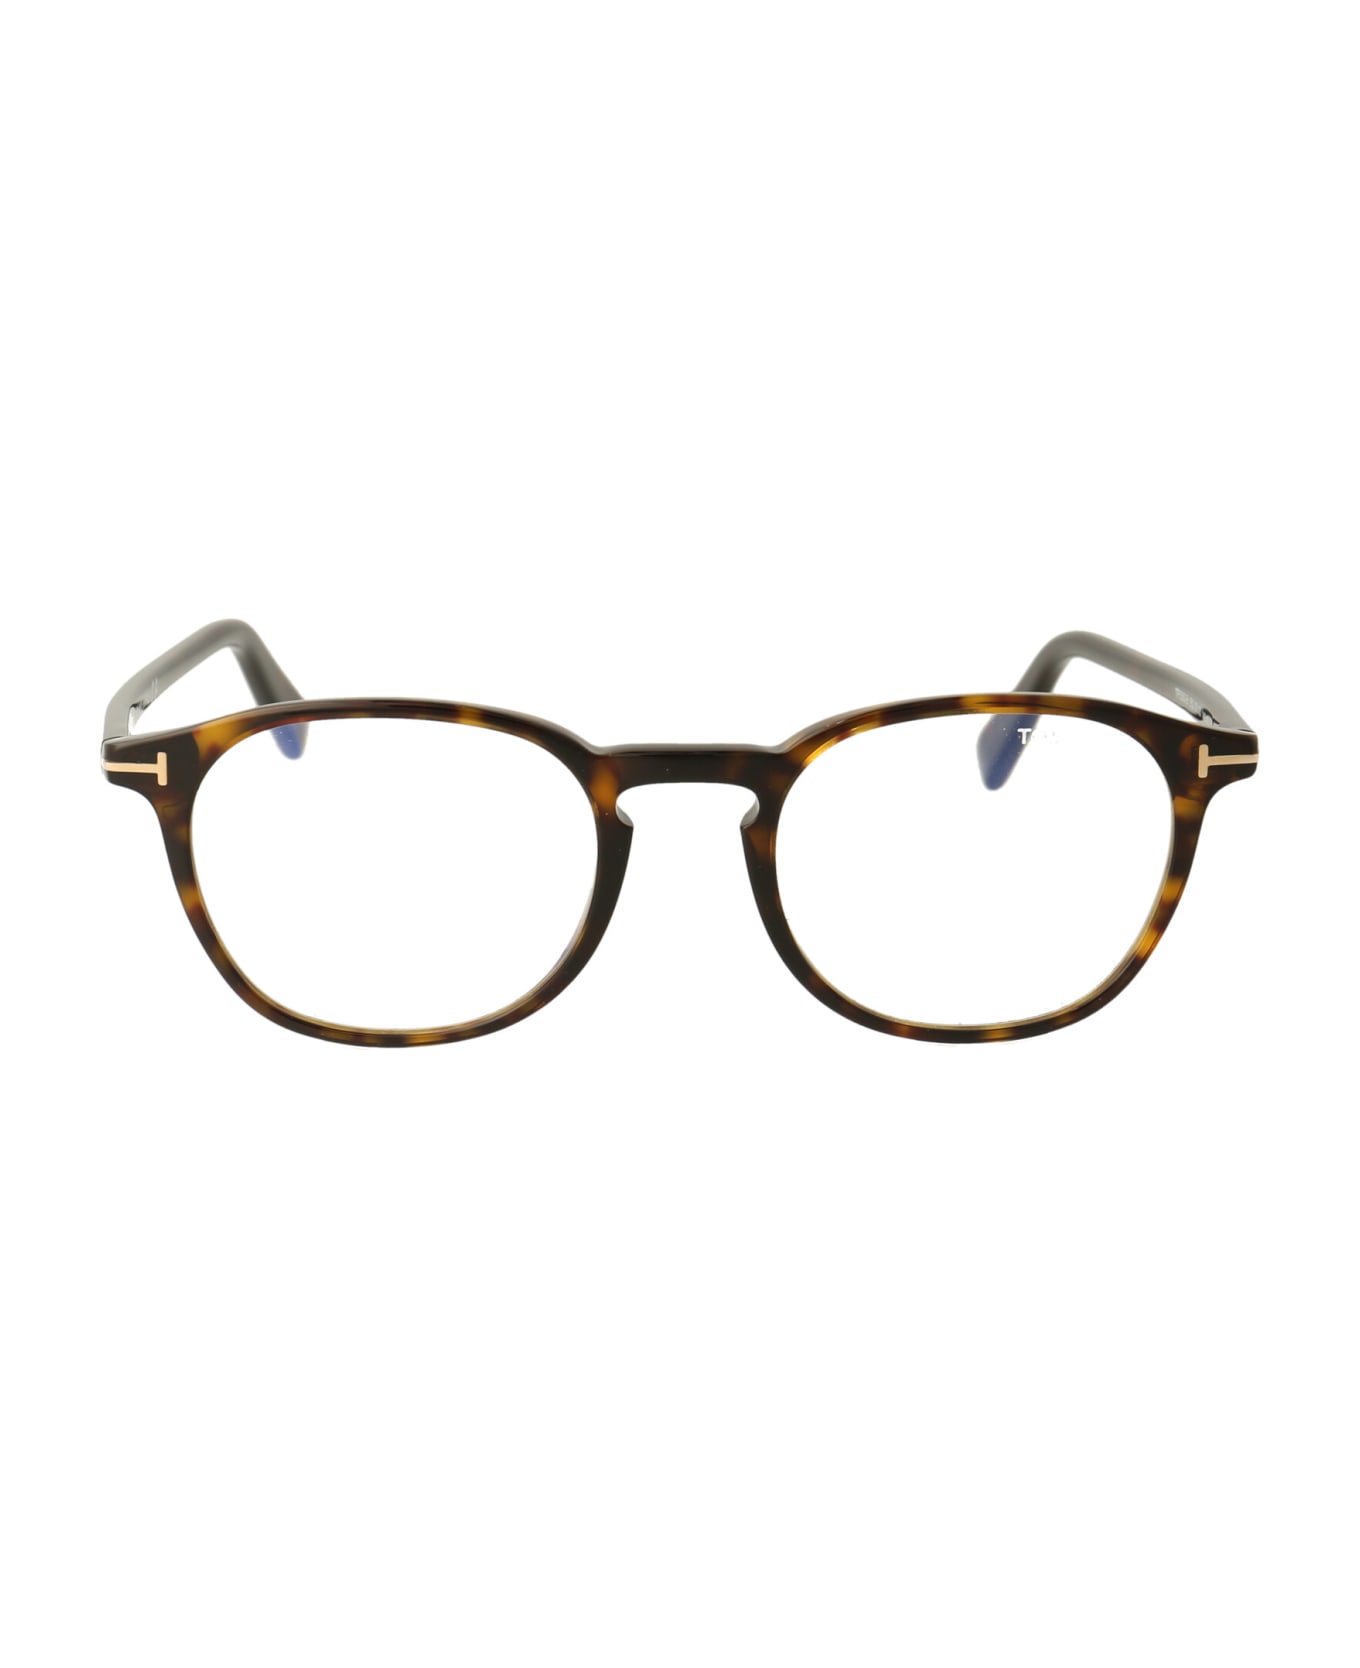 Tom Ford Eyewear Ft5583-b Glasses - 052 Avana Scura